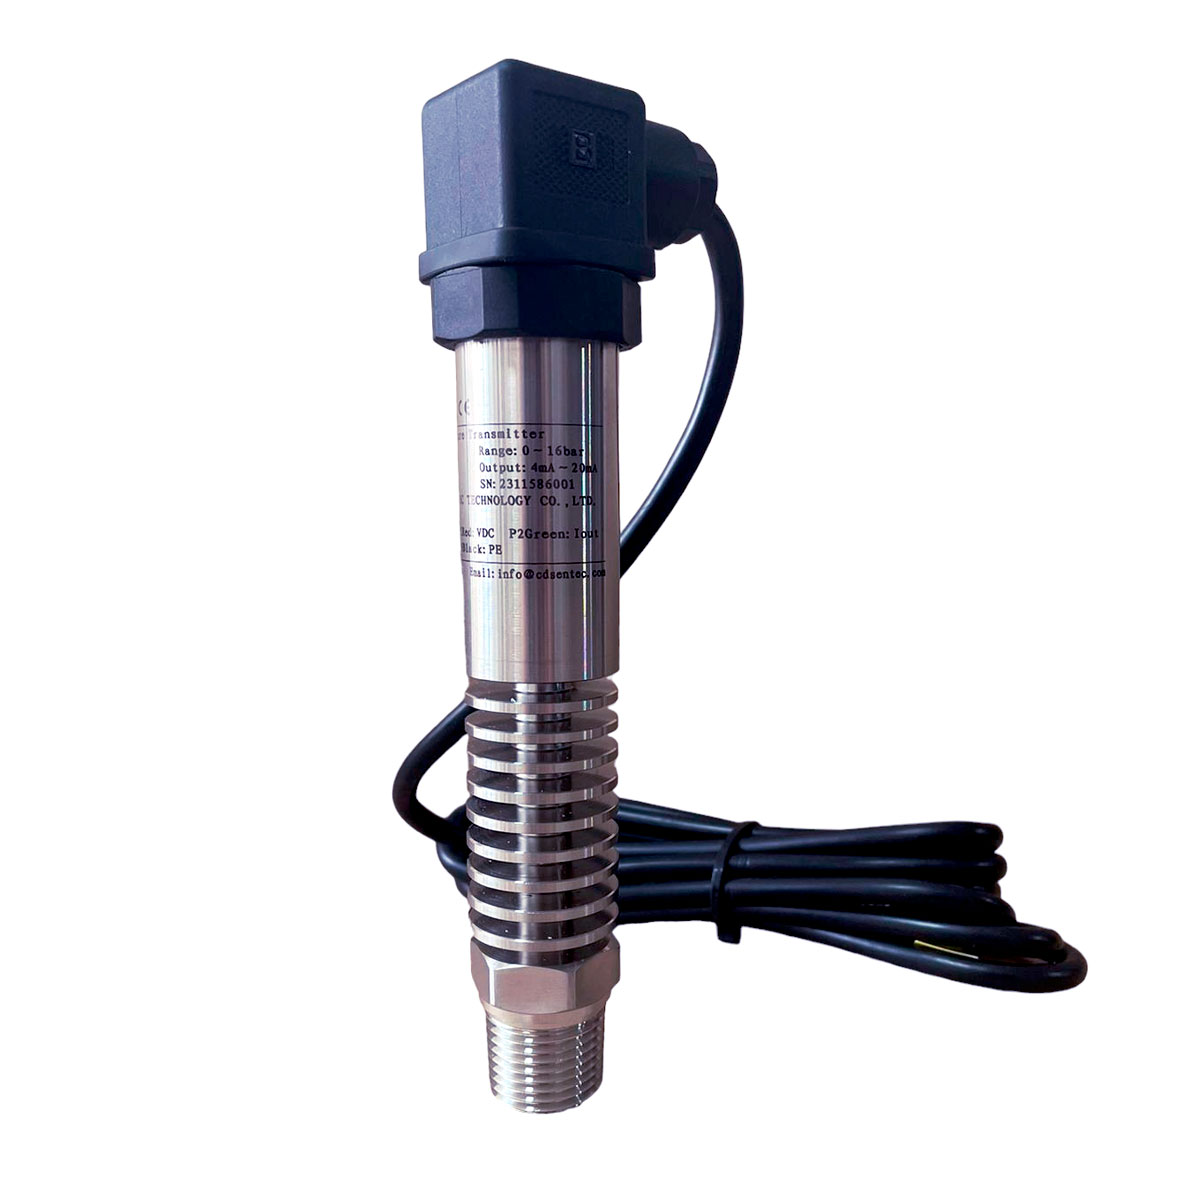 Transmisor de presión conector Hirschman de 0-400 bar, 12 NPT, -40 a120°C, 24DVC, 4~20mA, PM420-400, precio transmisor de presión en Peru- Kusitest